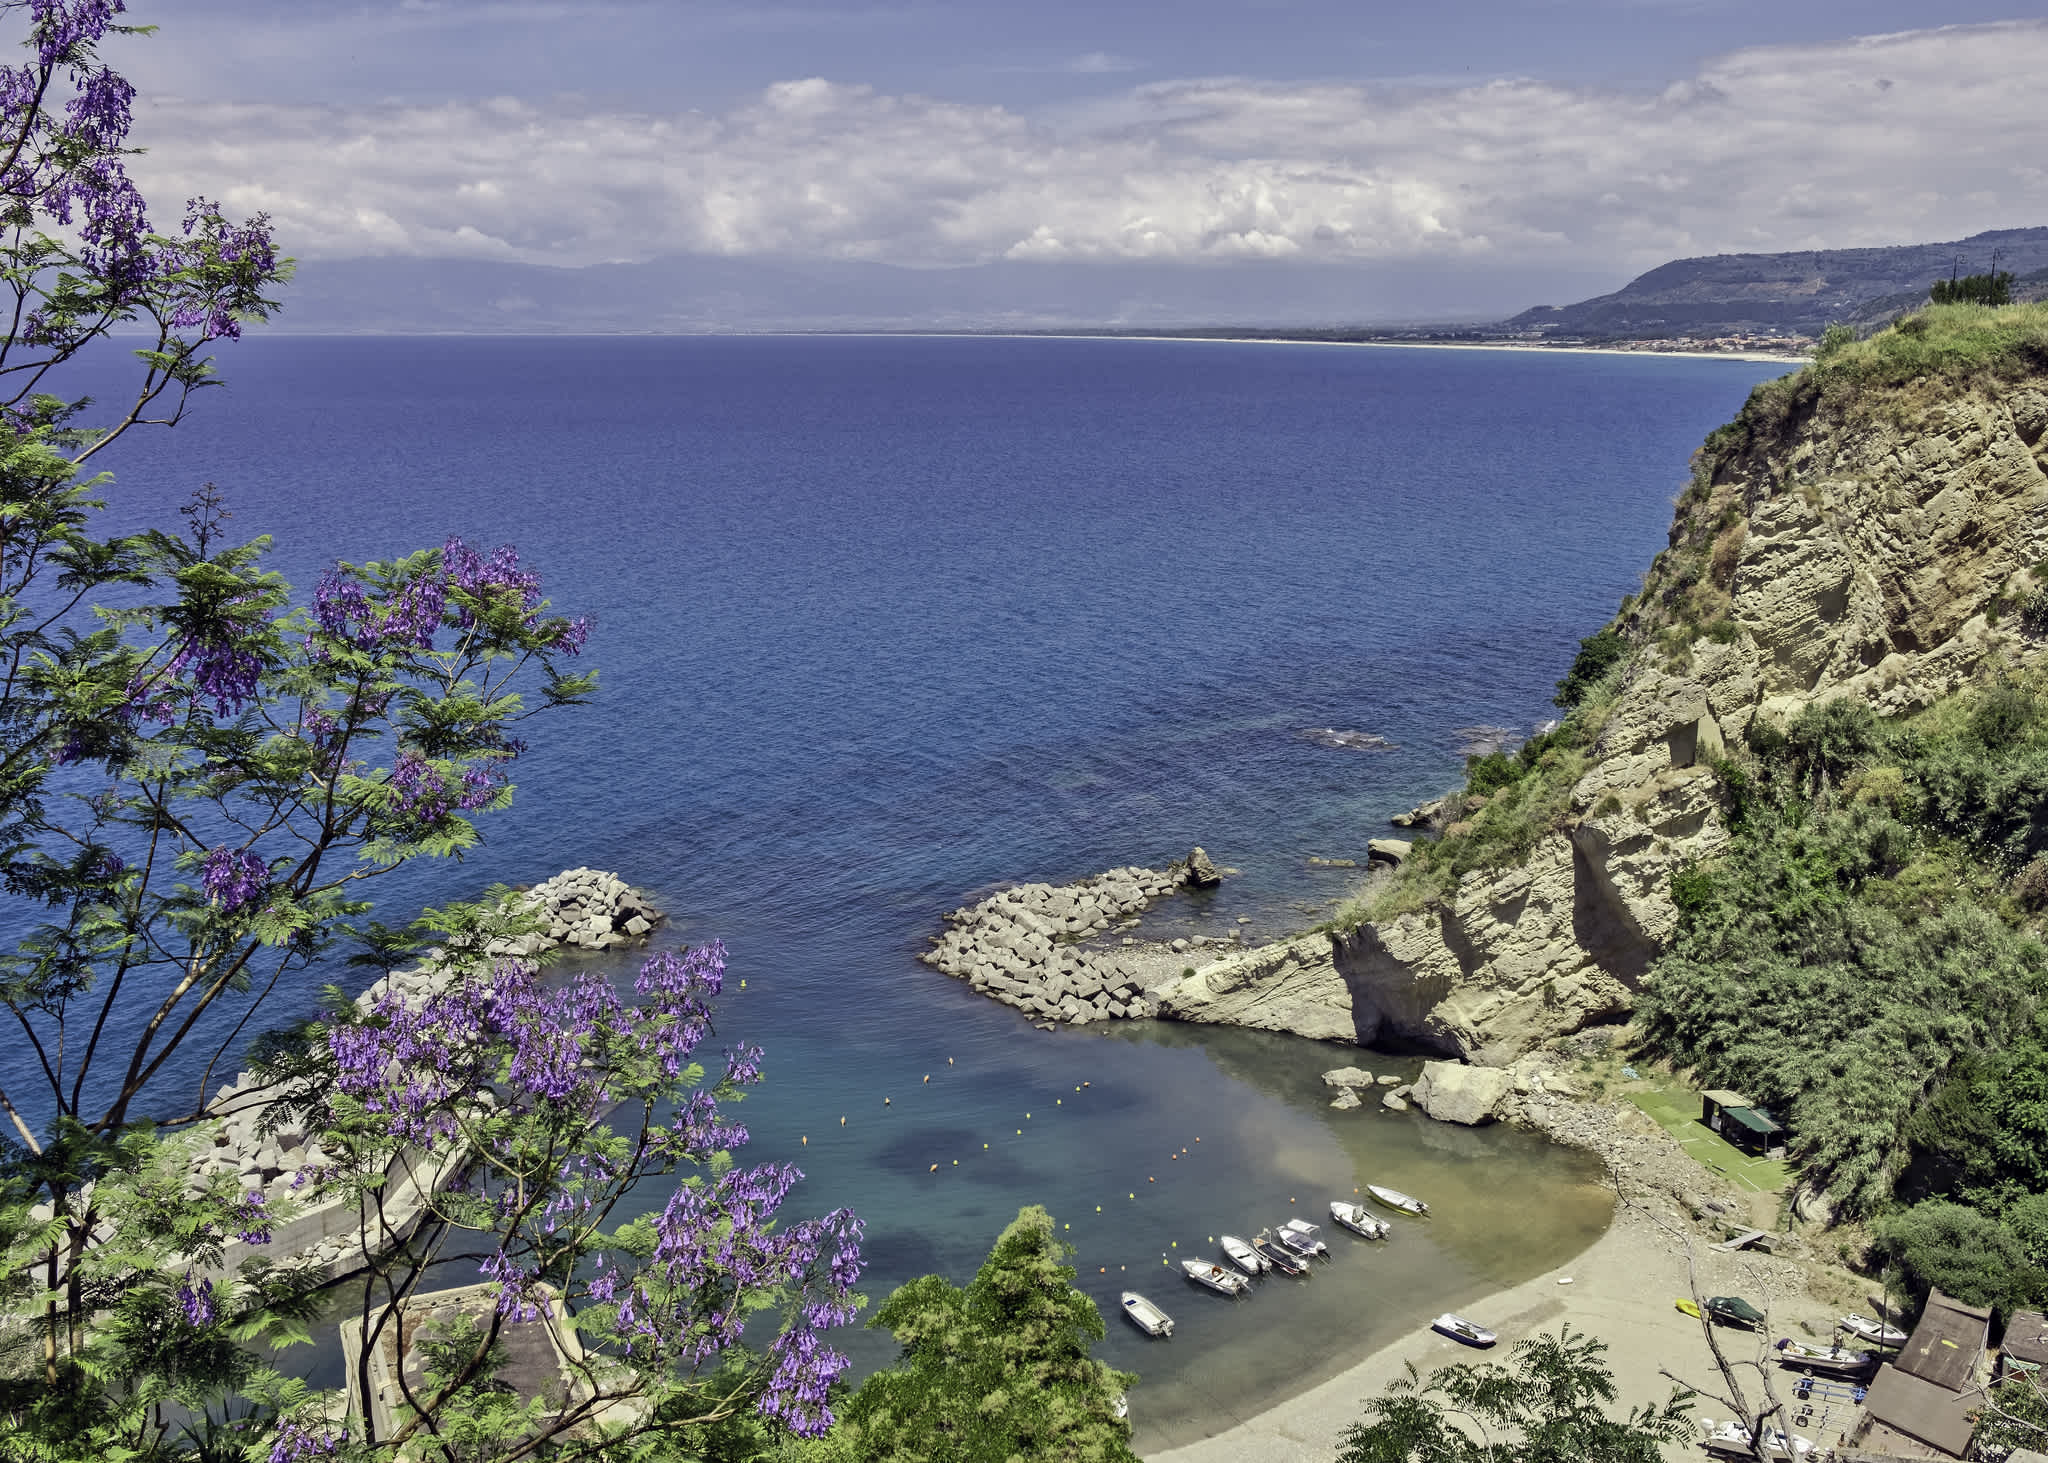 Luftaufnahme einer Strandbucht in Kalabrien, umgeben von Felsen und üppiger Vegetation.